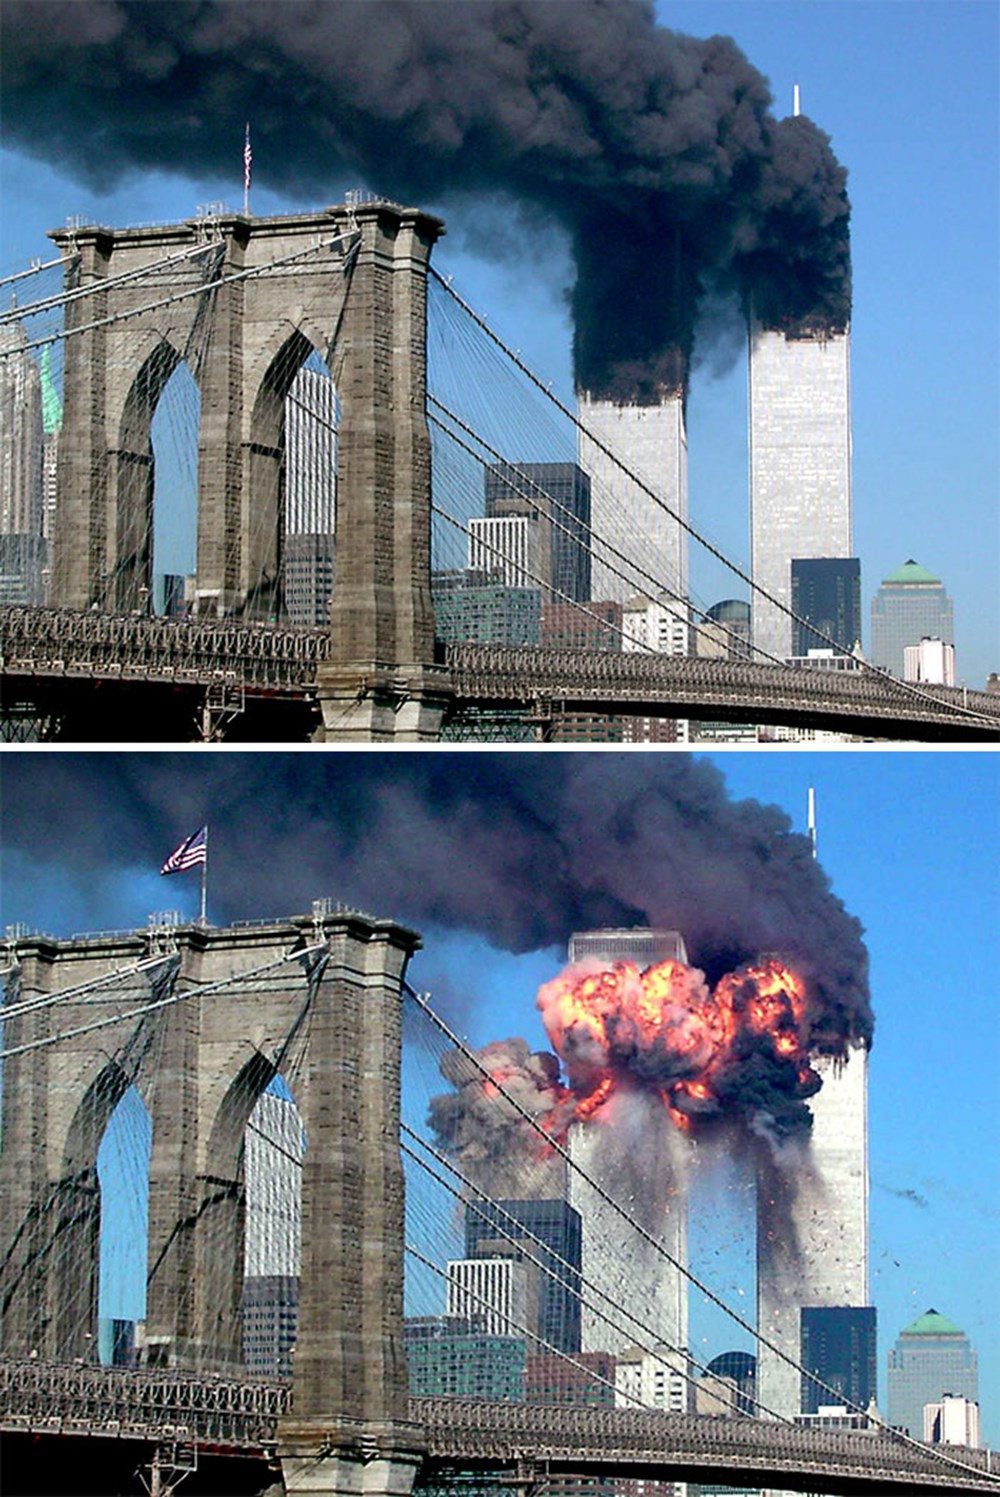 Теракт башен близнецов 11 сентября 2001. Башни-Близнецы 11 сентября 2001. Всемирный торговый центр в Нью-Йорке 11 сентября 2001 года. Башни Близнецы в Нью-Йорке 11 сентября. Теракт 11 сентября 2001 года башни Близнецы.